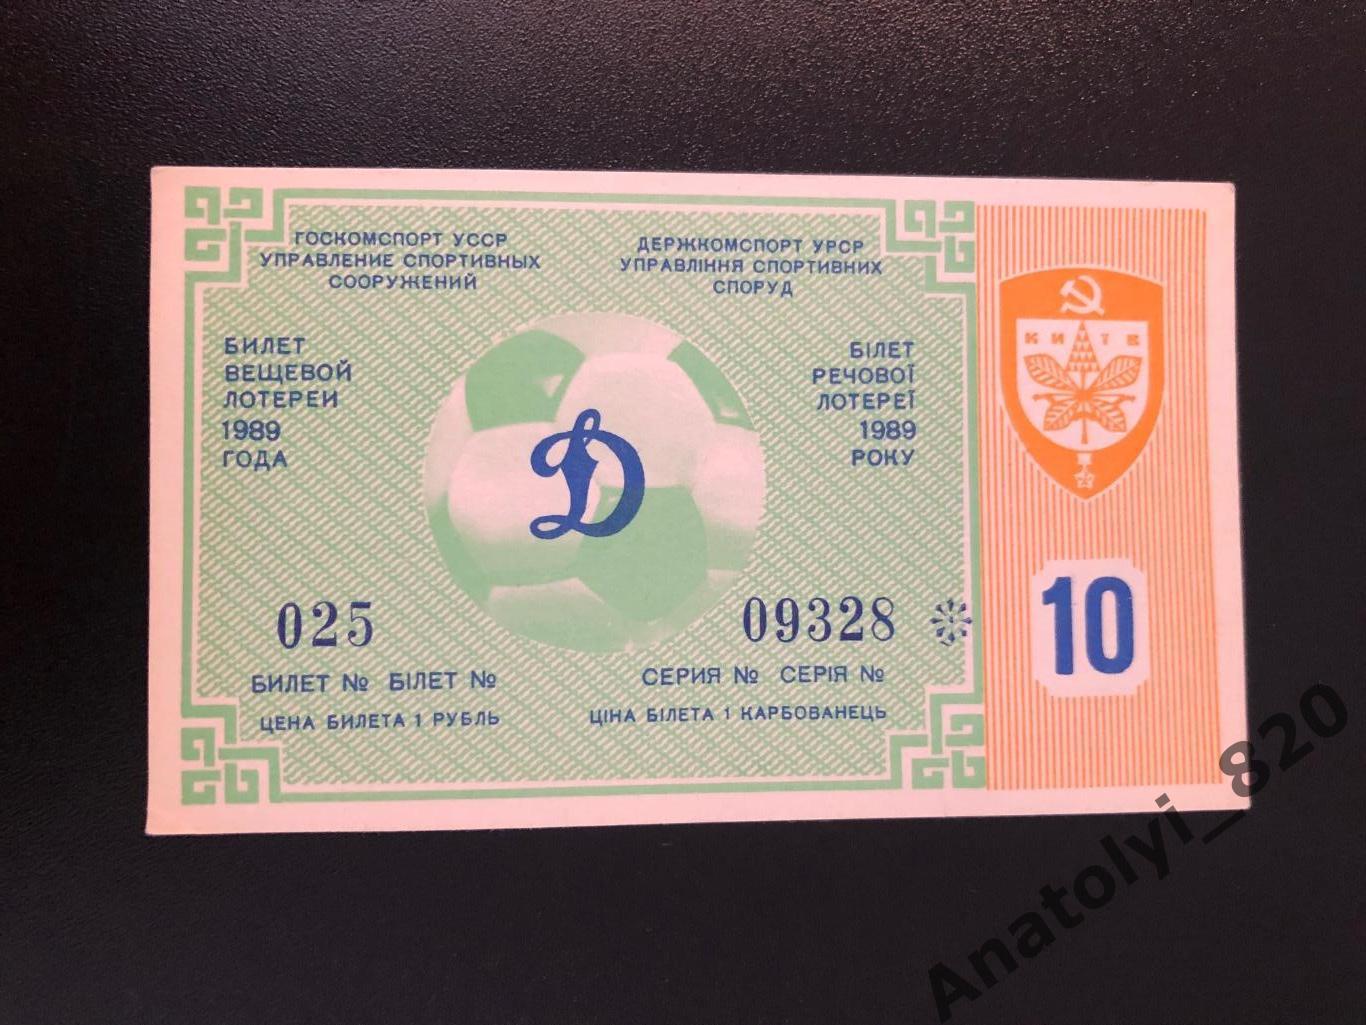 Билет вещевой лотереи, Киев 1989 год